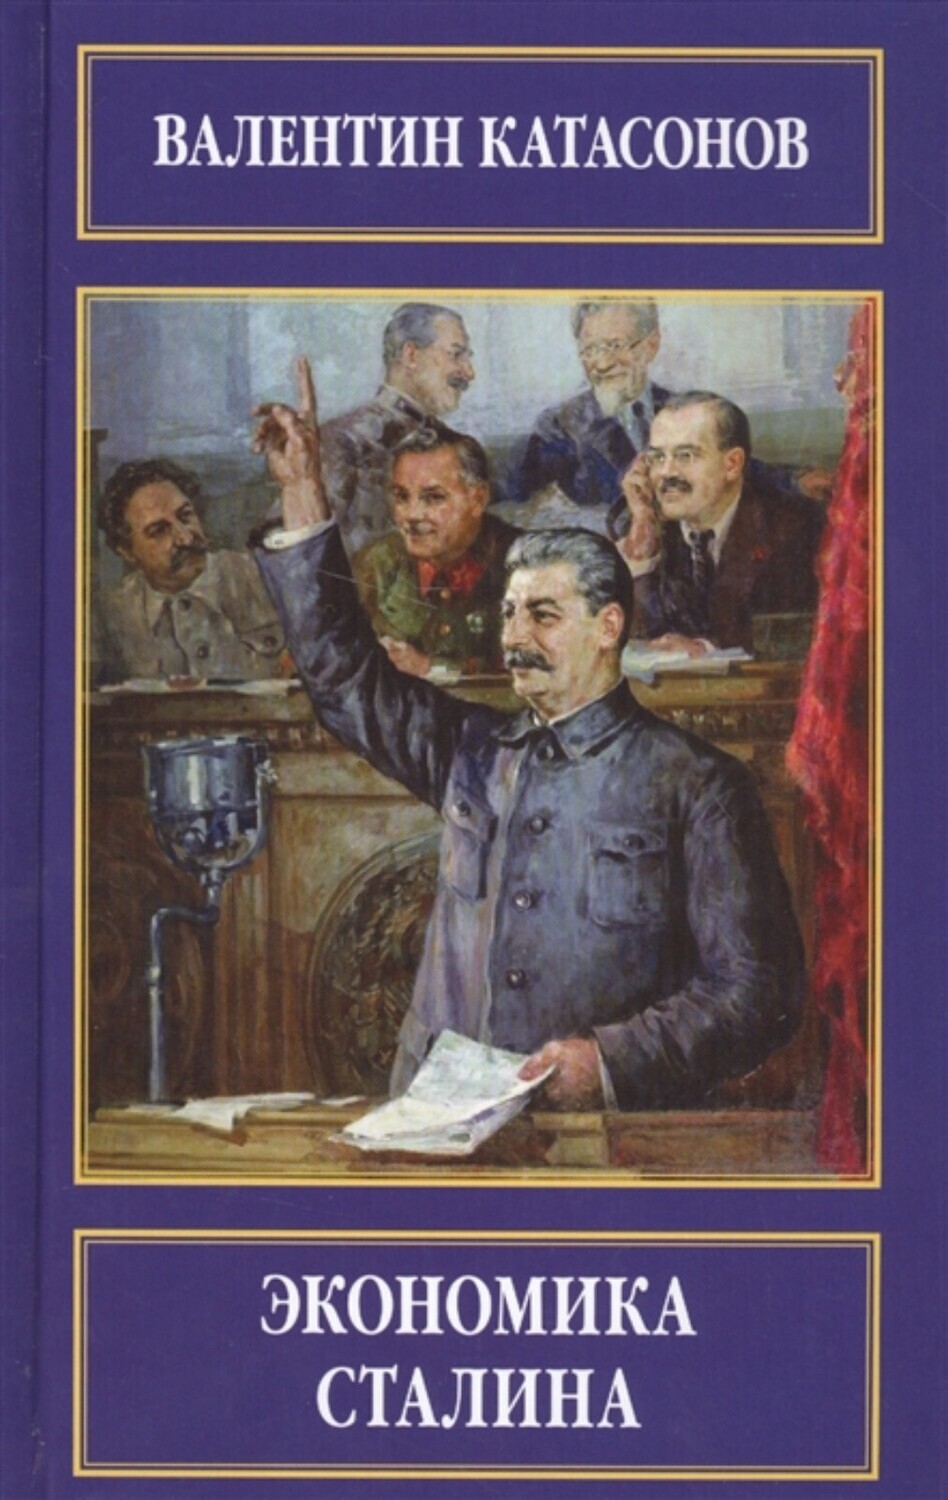 Экономика Сталина. В.Ю. Катасонов